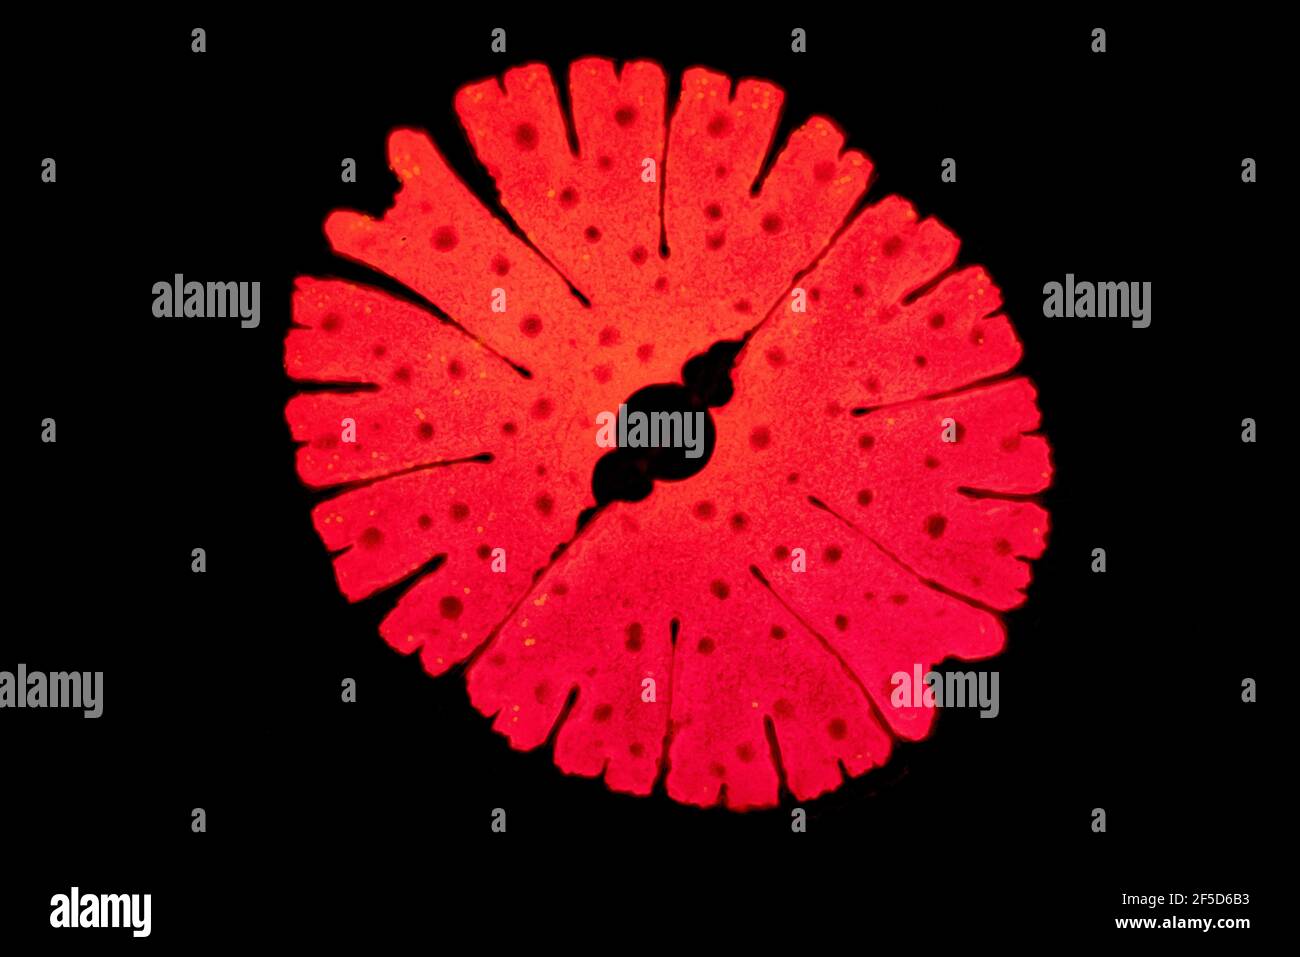 Grünalge (Micrasterias rotata), Phasenkontrast-MRT-Bild, Vergrößerung x100 bezogen auf 35 mm, Deutschland Stockfoto